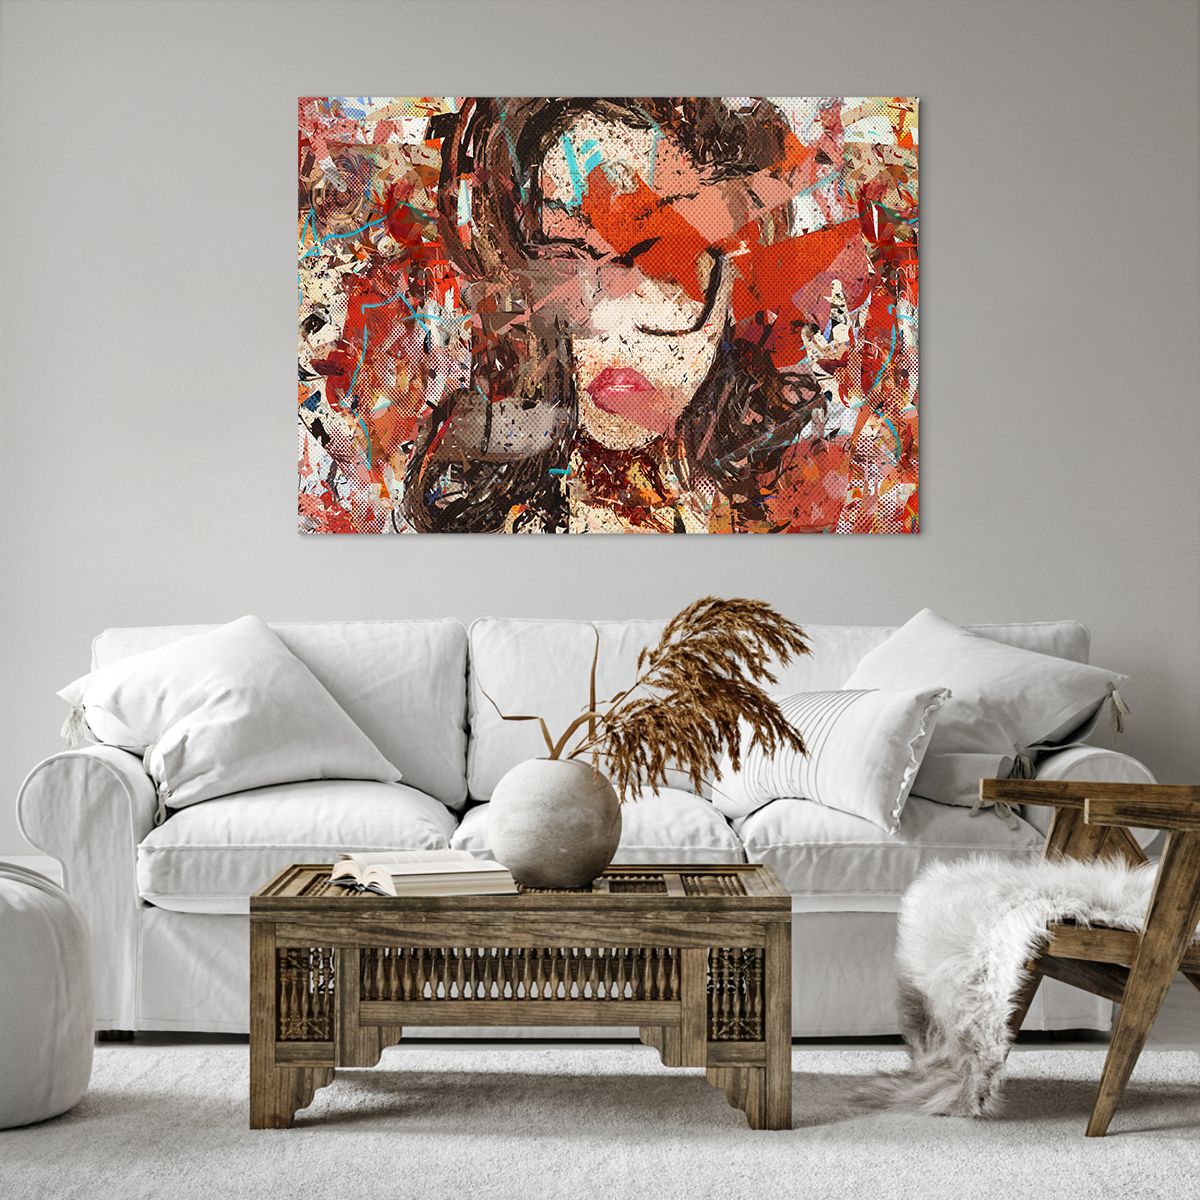 Cuadro sobre lienzo Abstracción, Cuadro sobre lienzo Retrato De Una Mujer, Cuadro sobre lienzo Gráficos, Cuadro sobre lienzo Arte, Cuadro sobre lienzo Expresionismo